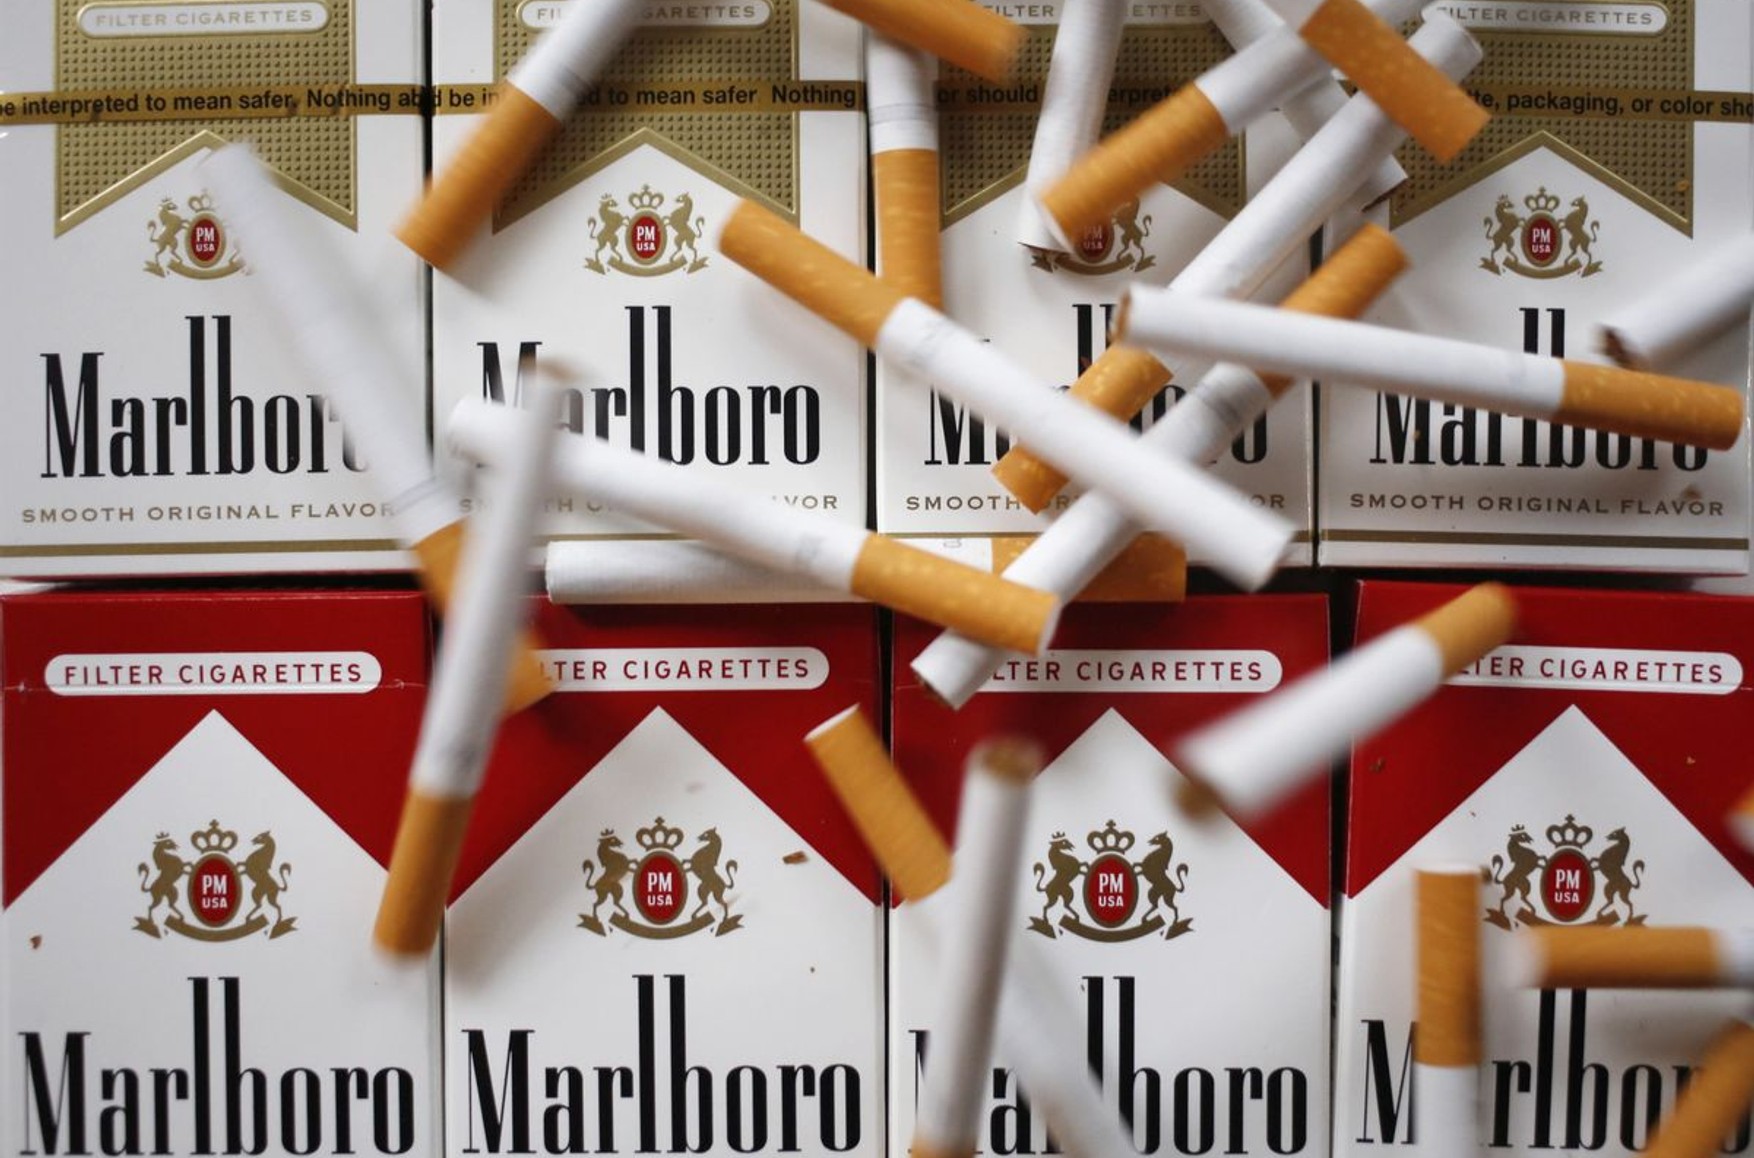 Philip Morris планирует уйти из России до конца года